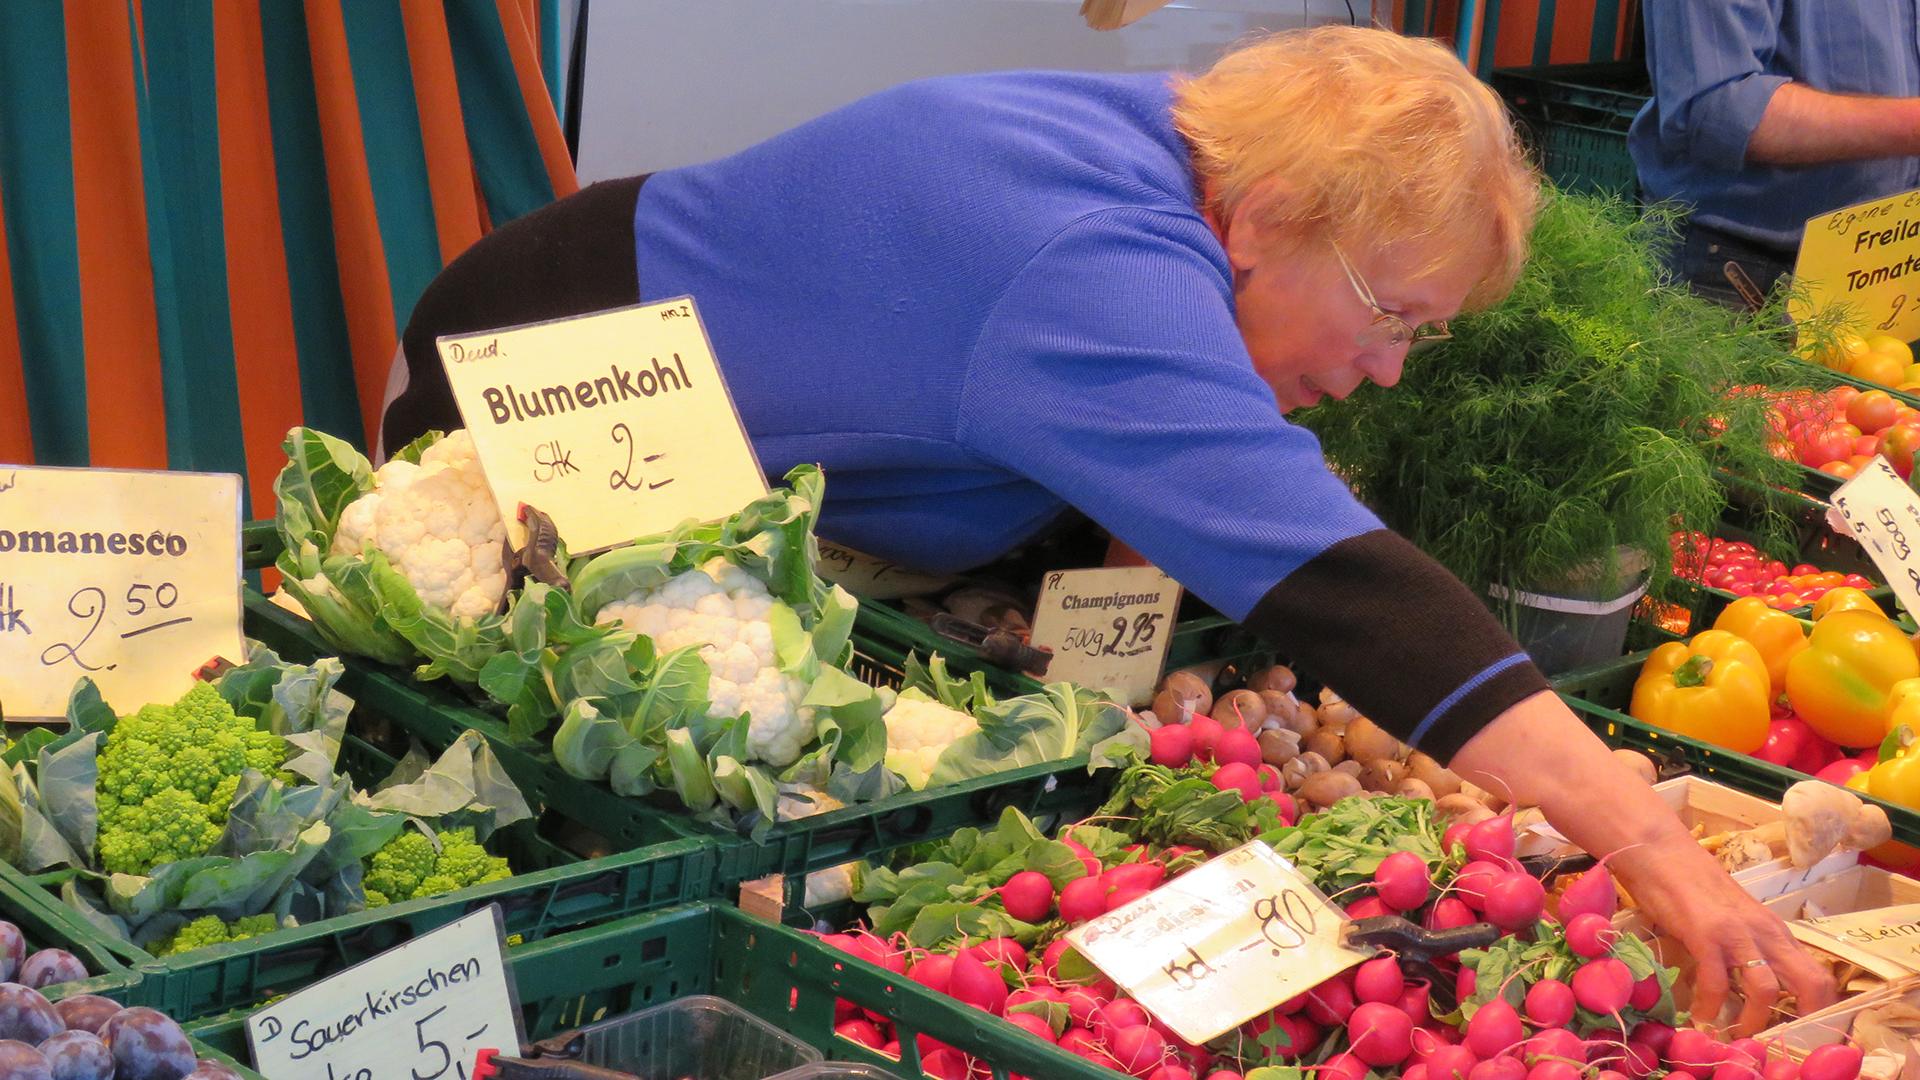 Eine Frau eines Verkaufsstandes auf einem Markt beugt sich über Kisten verschiedener Gemüsesorten.